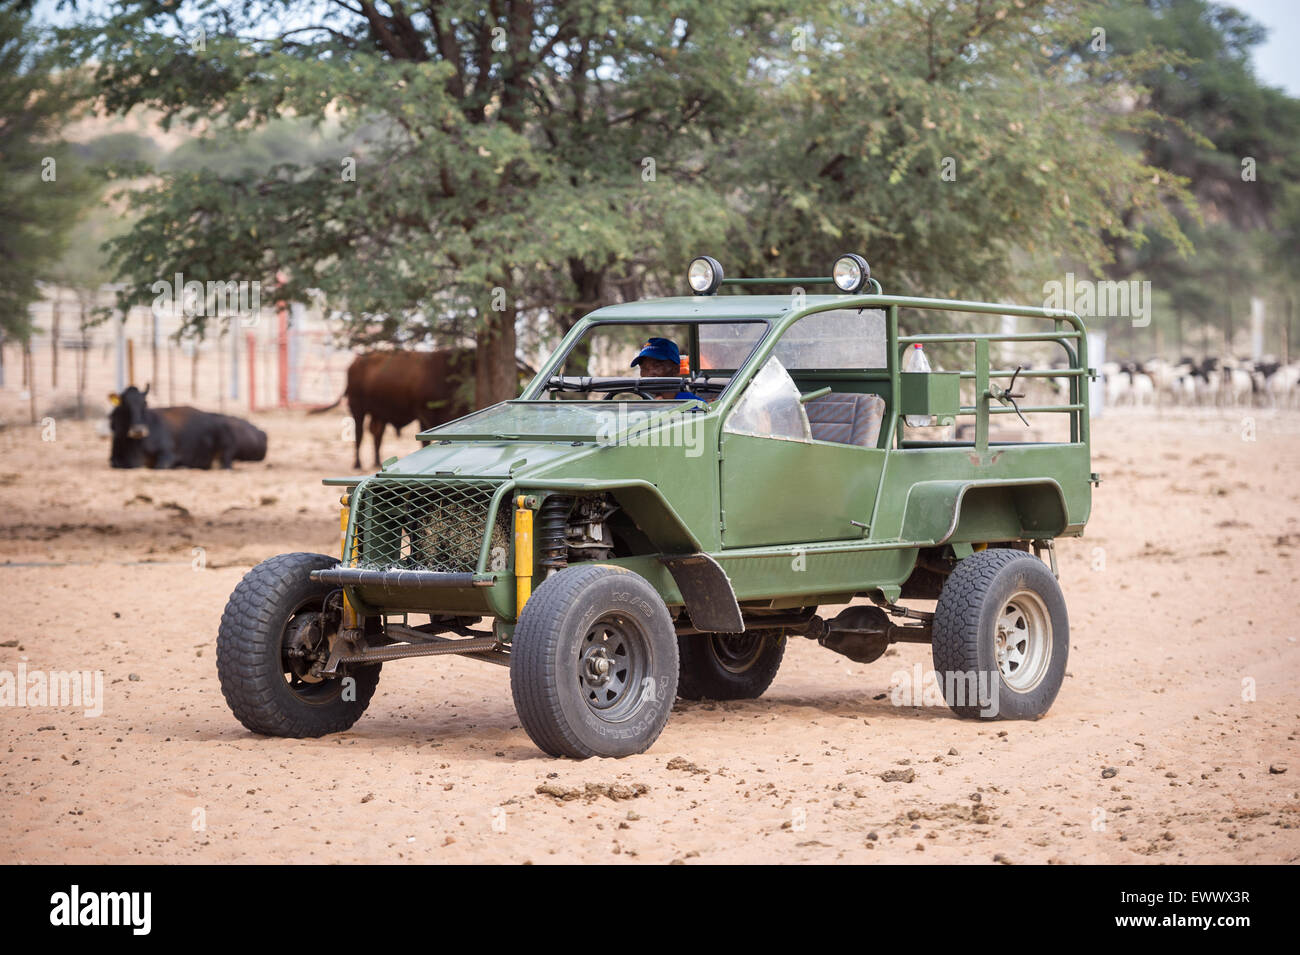 La Namibie, l'Afrique - l'équitation buggy fait maison sur la ferme de moutons Banque D'Images